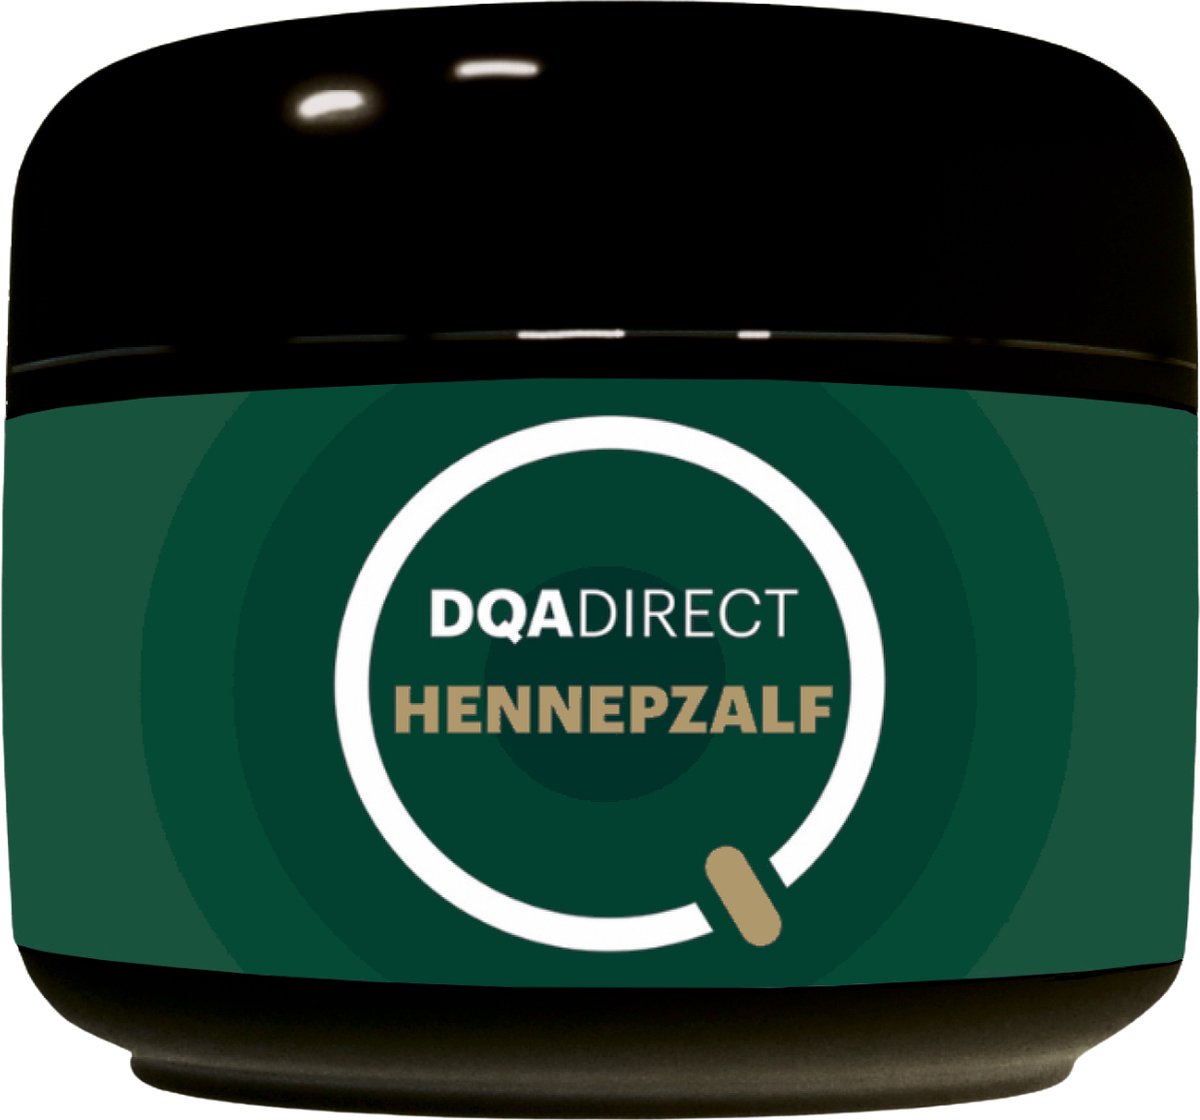 DQA Direct Hennepzalf